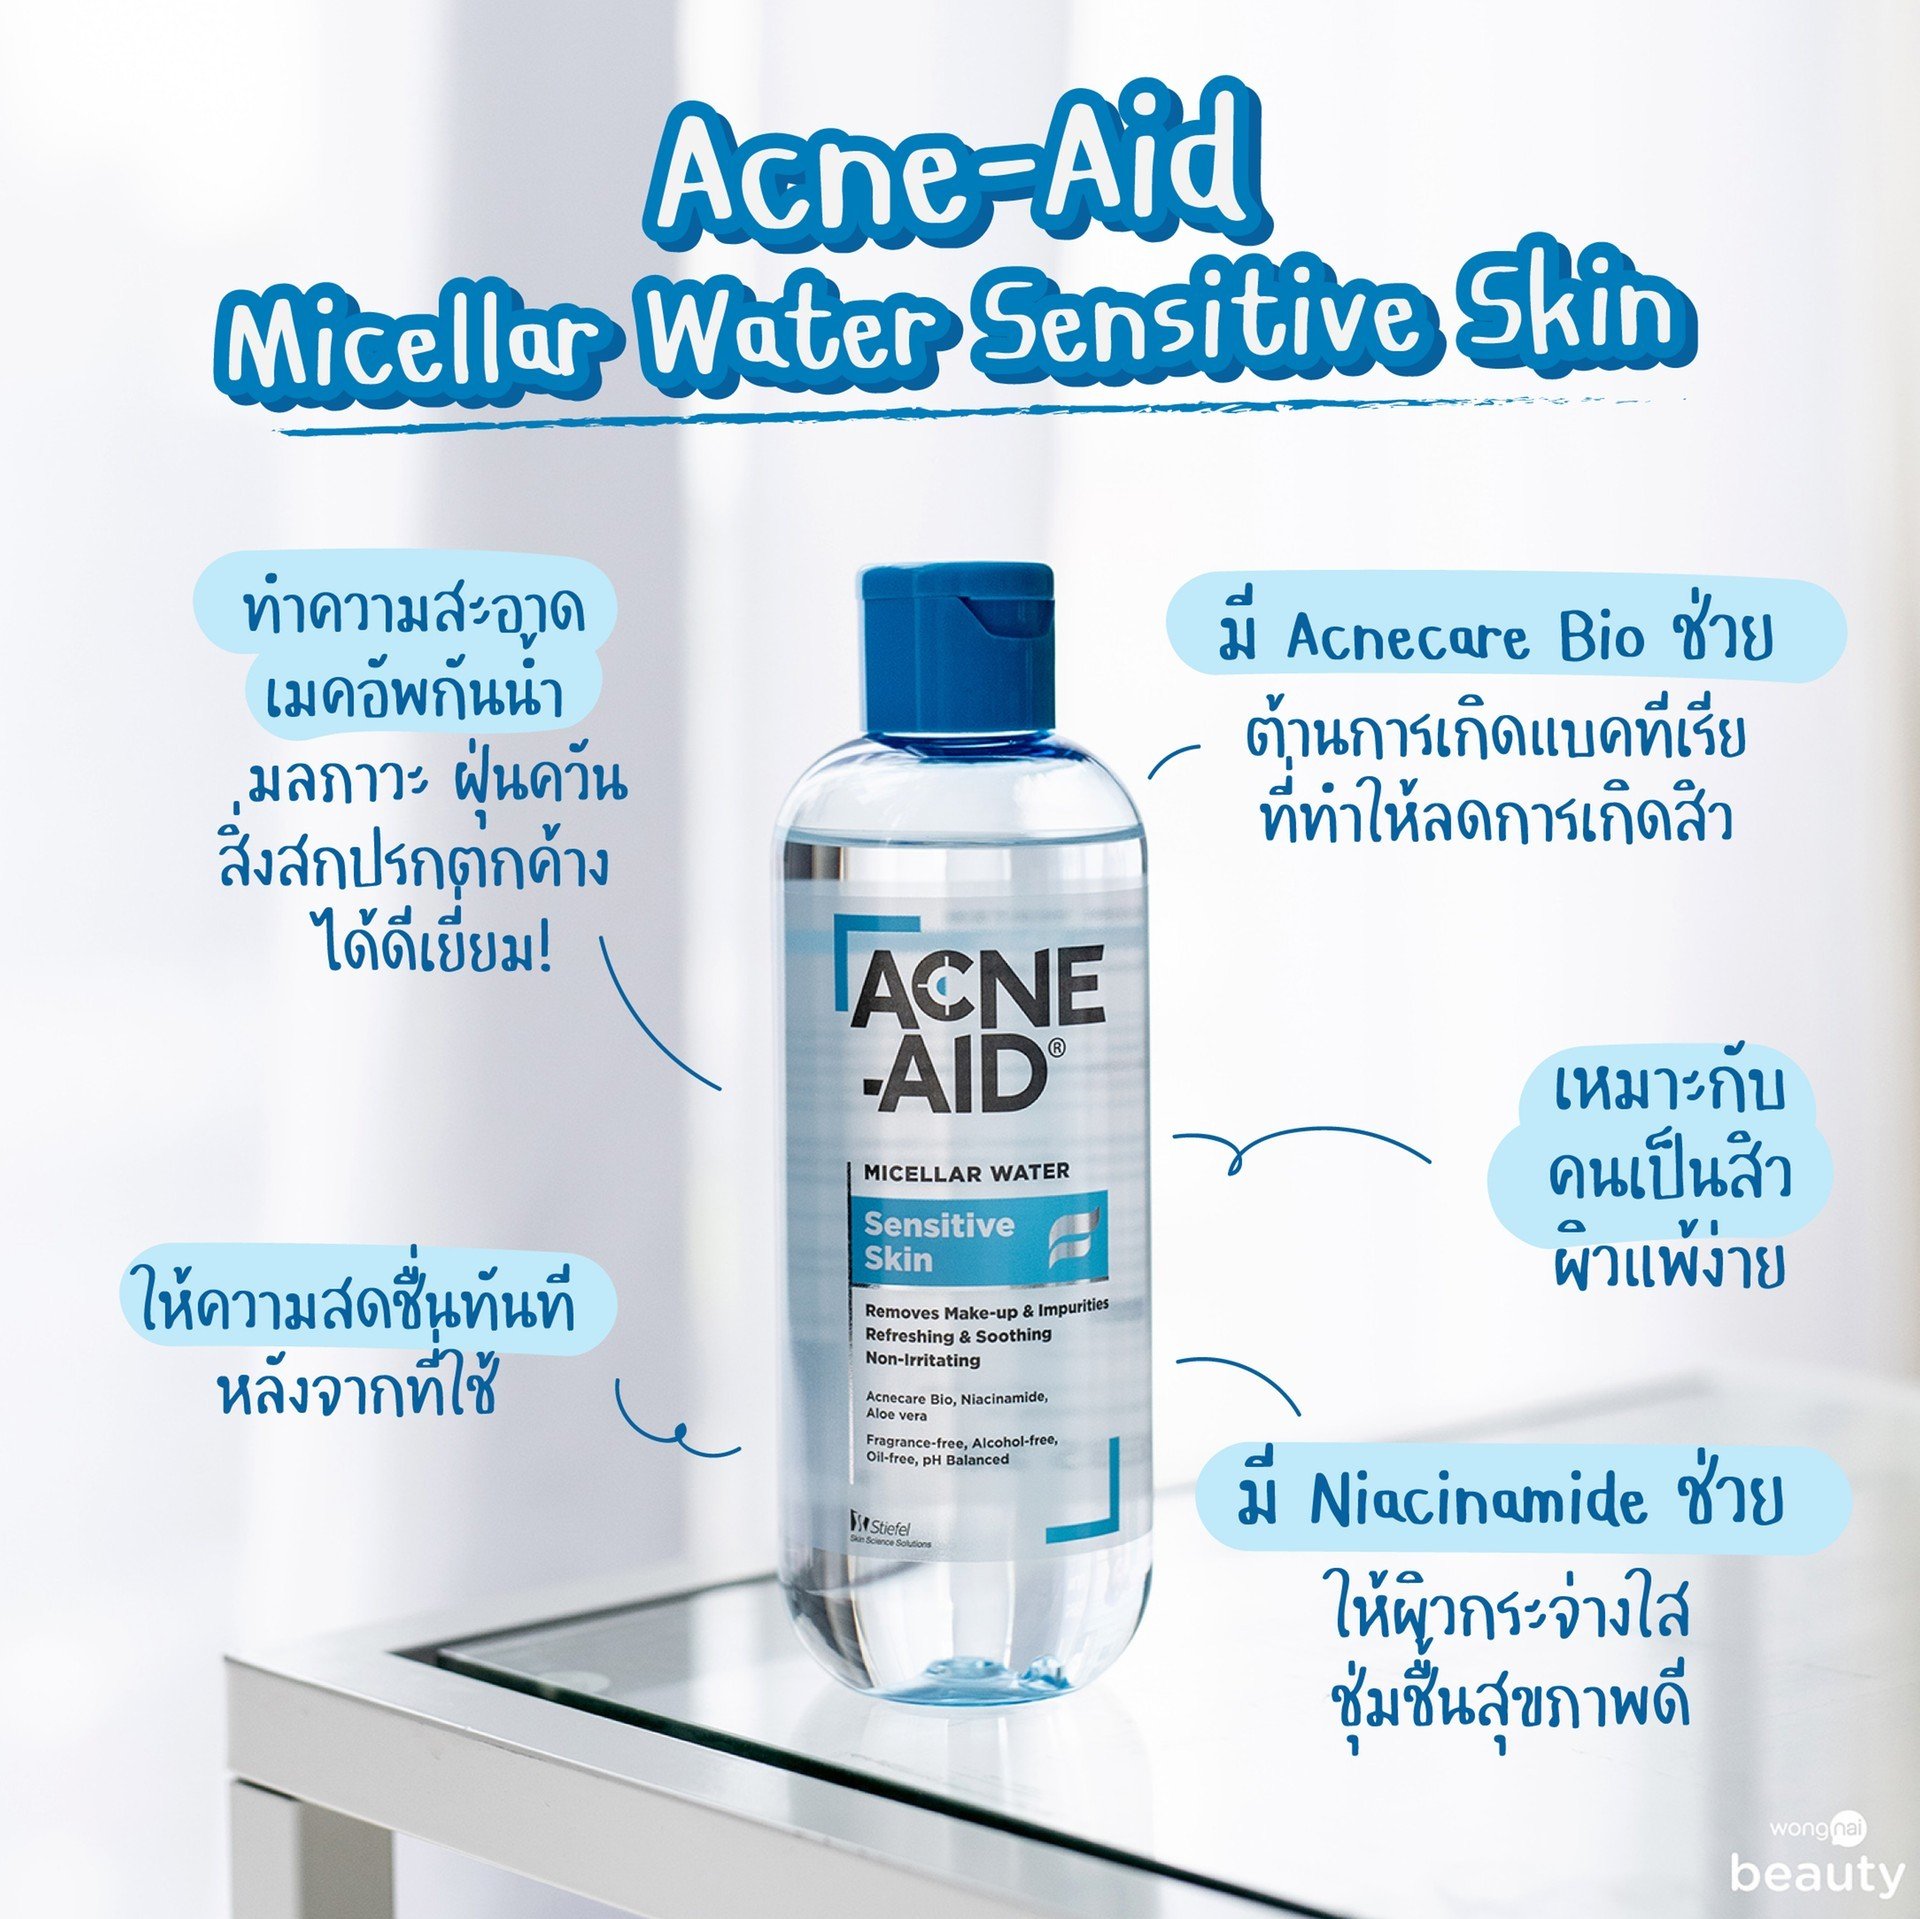 Acne-Aid Micellar